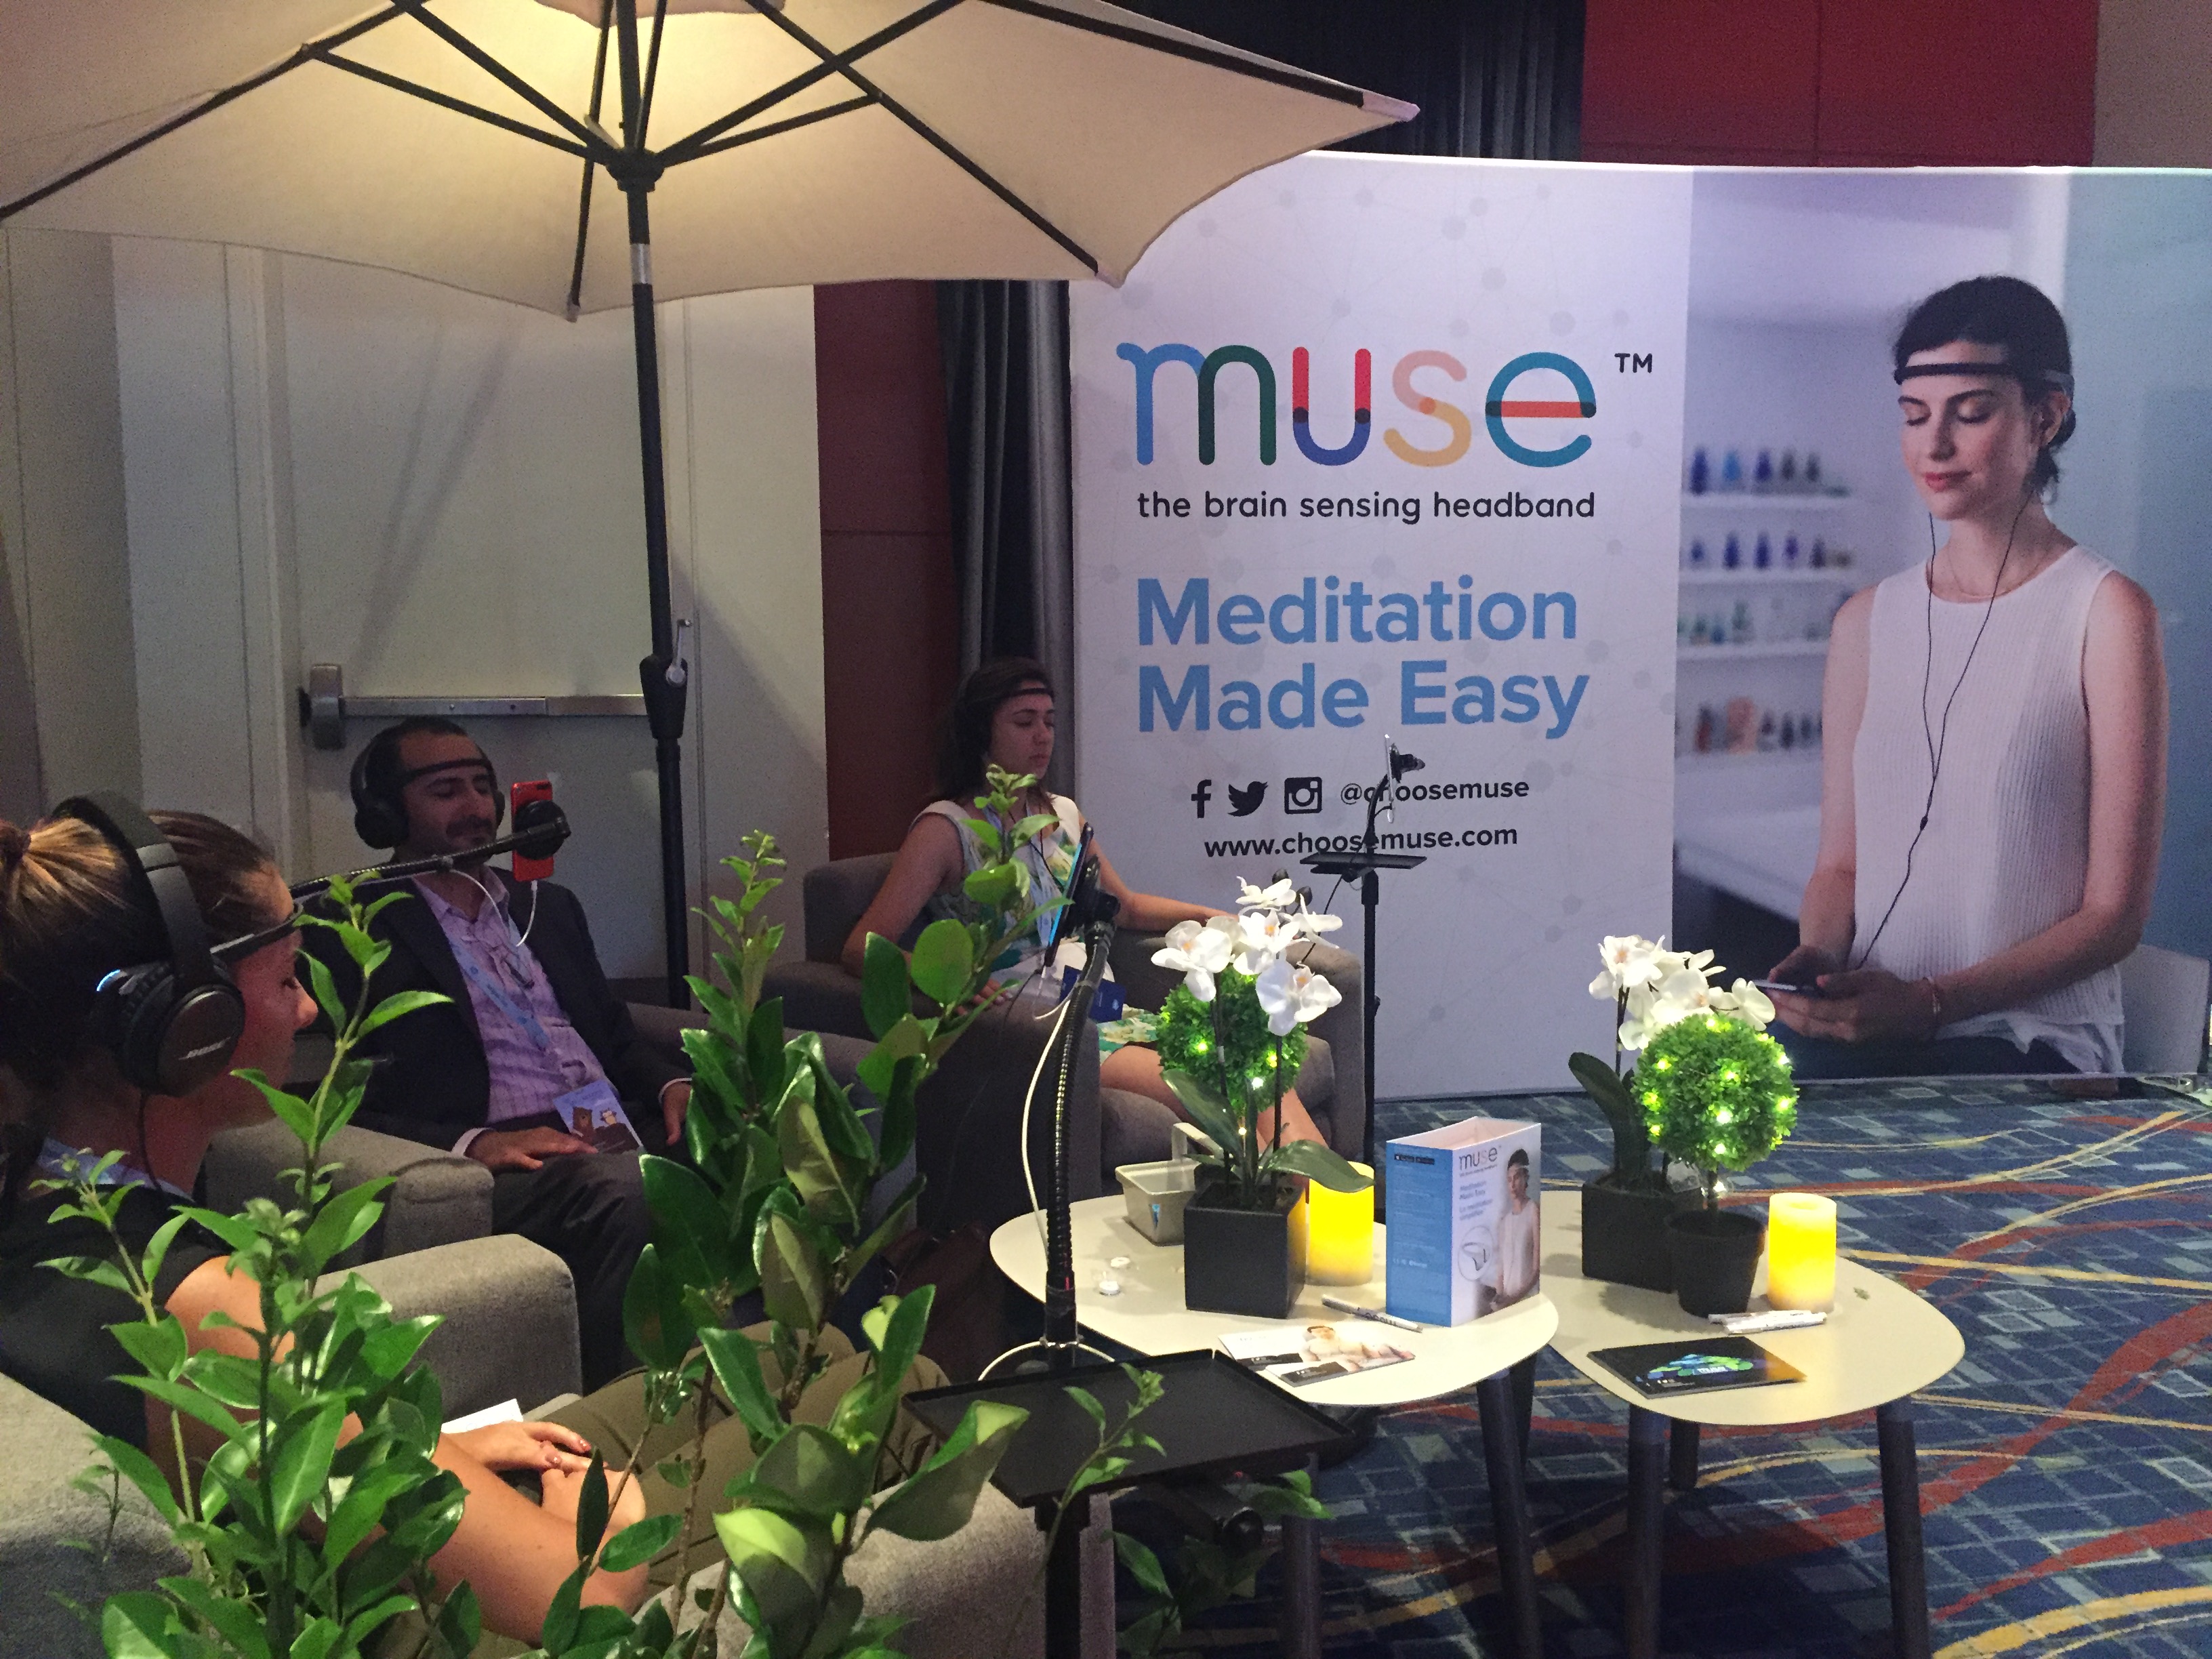 muse meditation app 